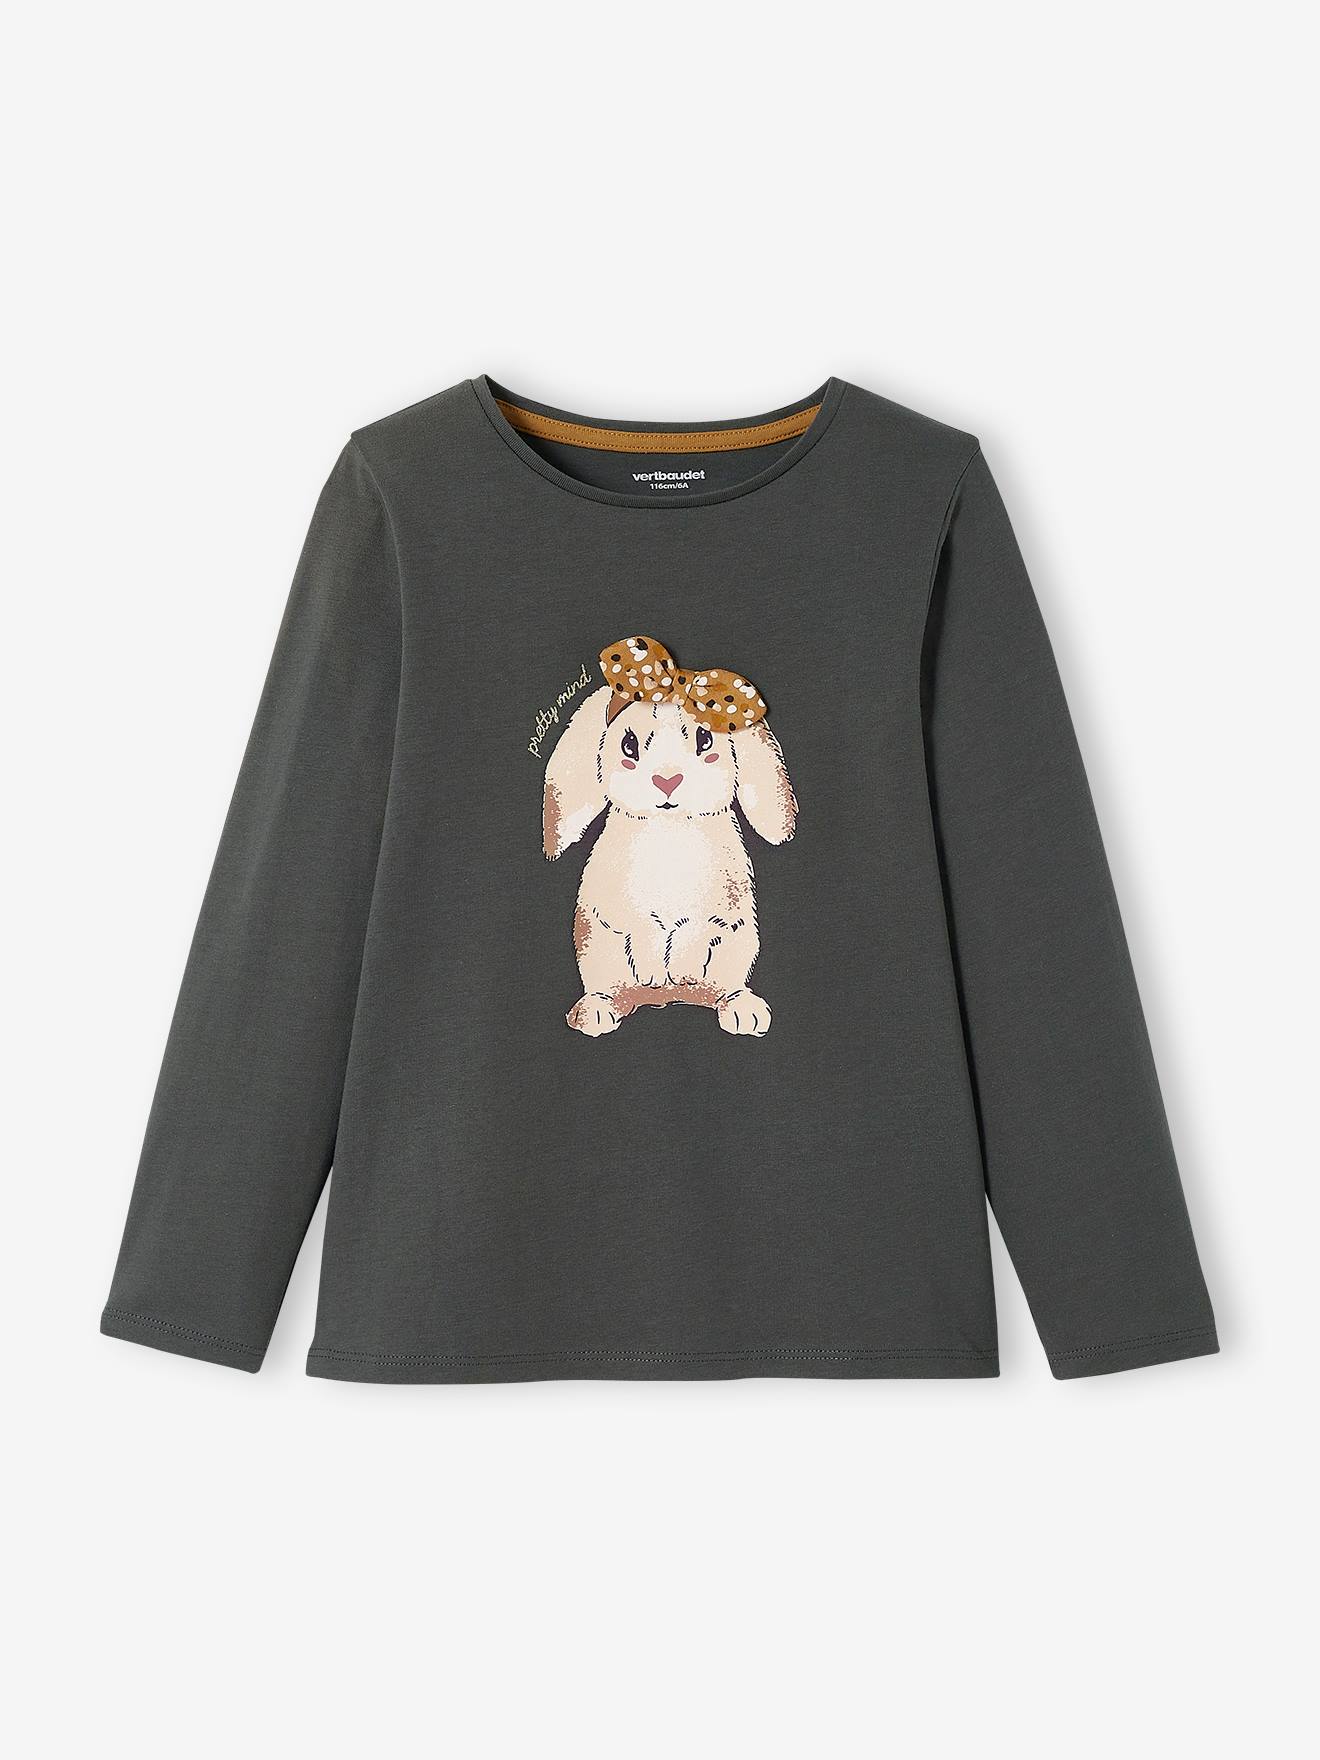 VERTBAUDET Camiseta con conejo y lacito fantasía, niña gris oscuro liso con motivos